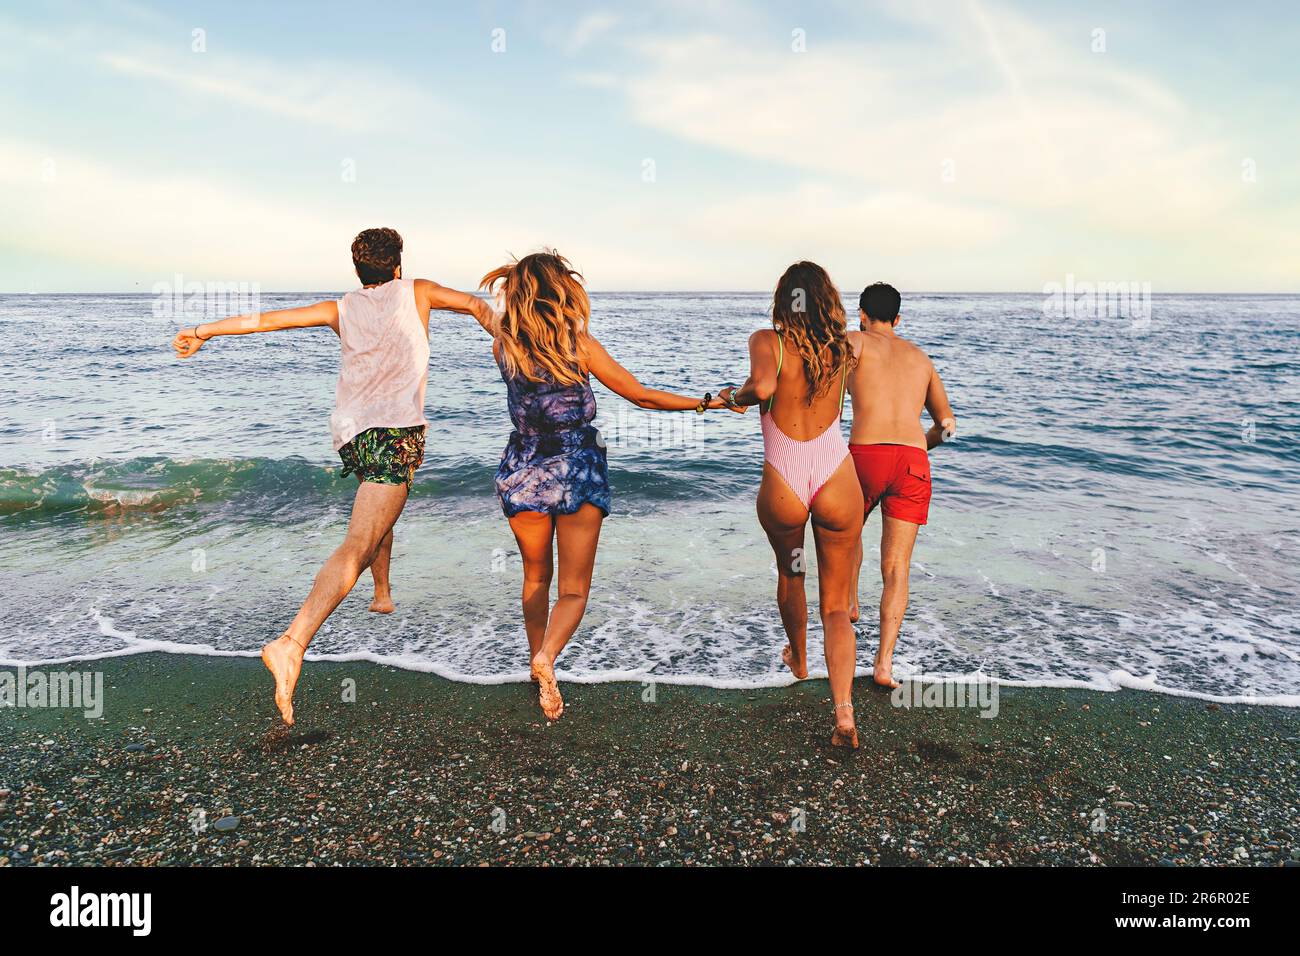 Quatre jeunes amis, deux couples caucasiens, courent vers la mer calme pour une baignade rafraîchissante. La caméra les capture de la plage, avec leur dos t Banque D'Images